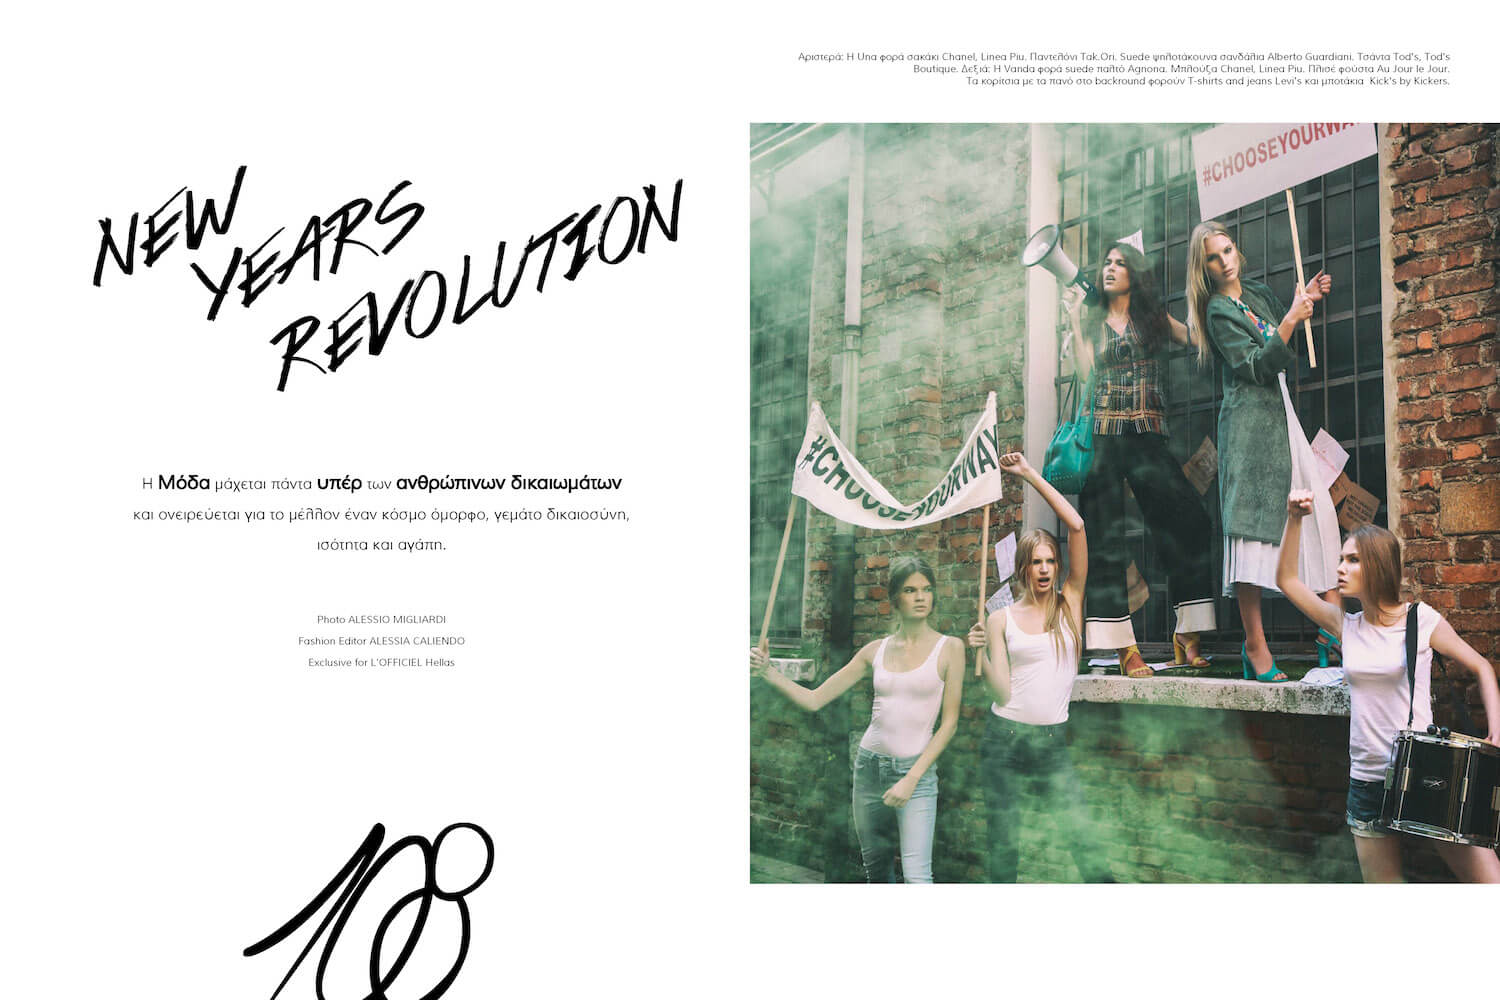  Hellas, Greece,  fashion, magazine, l'Officiel, Alessia Caliendo, Silvia Sadecka, Alessio Migliardi